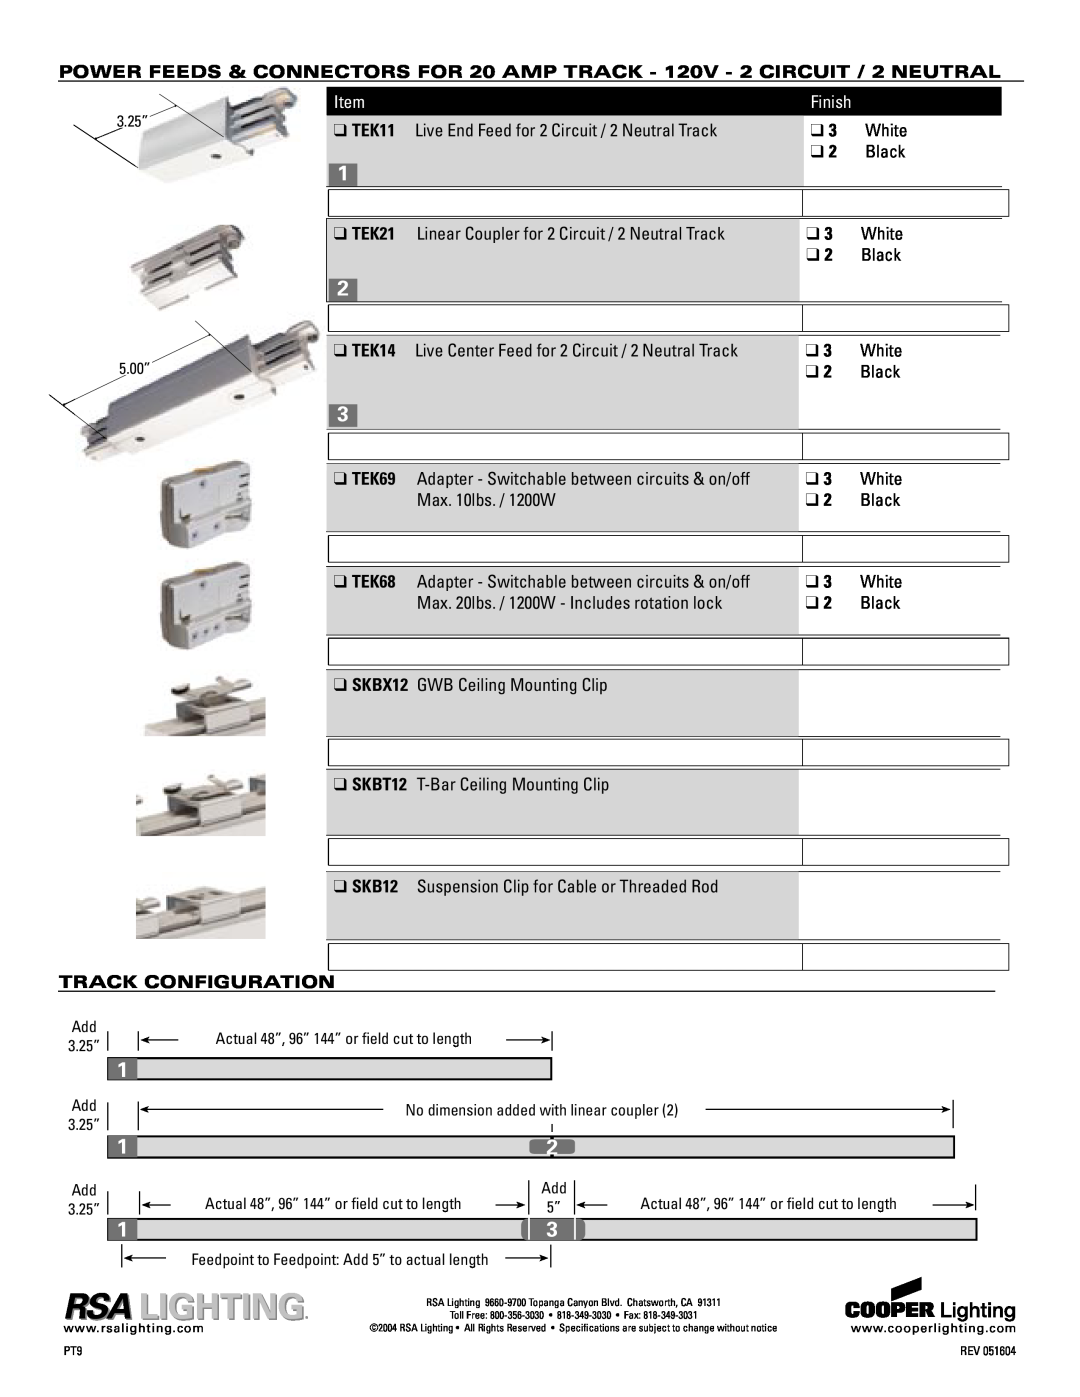 Cooper Lighting TEK4, FTP4 specifications TEK11, TEK21, TEK14, TEK69, Track Configuration, Finish 